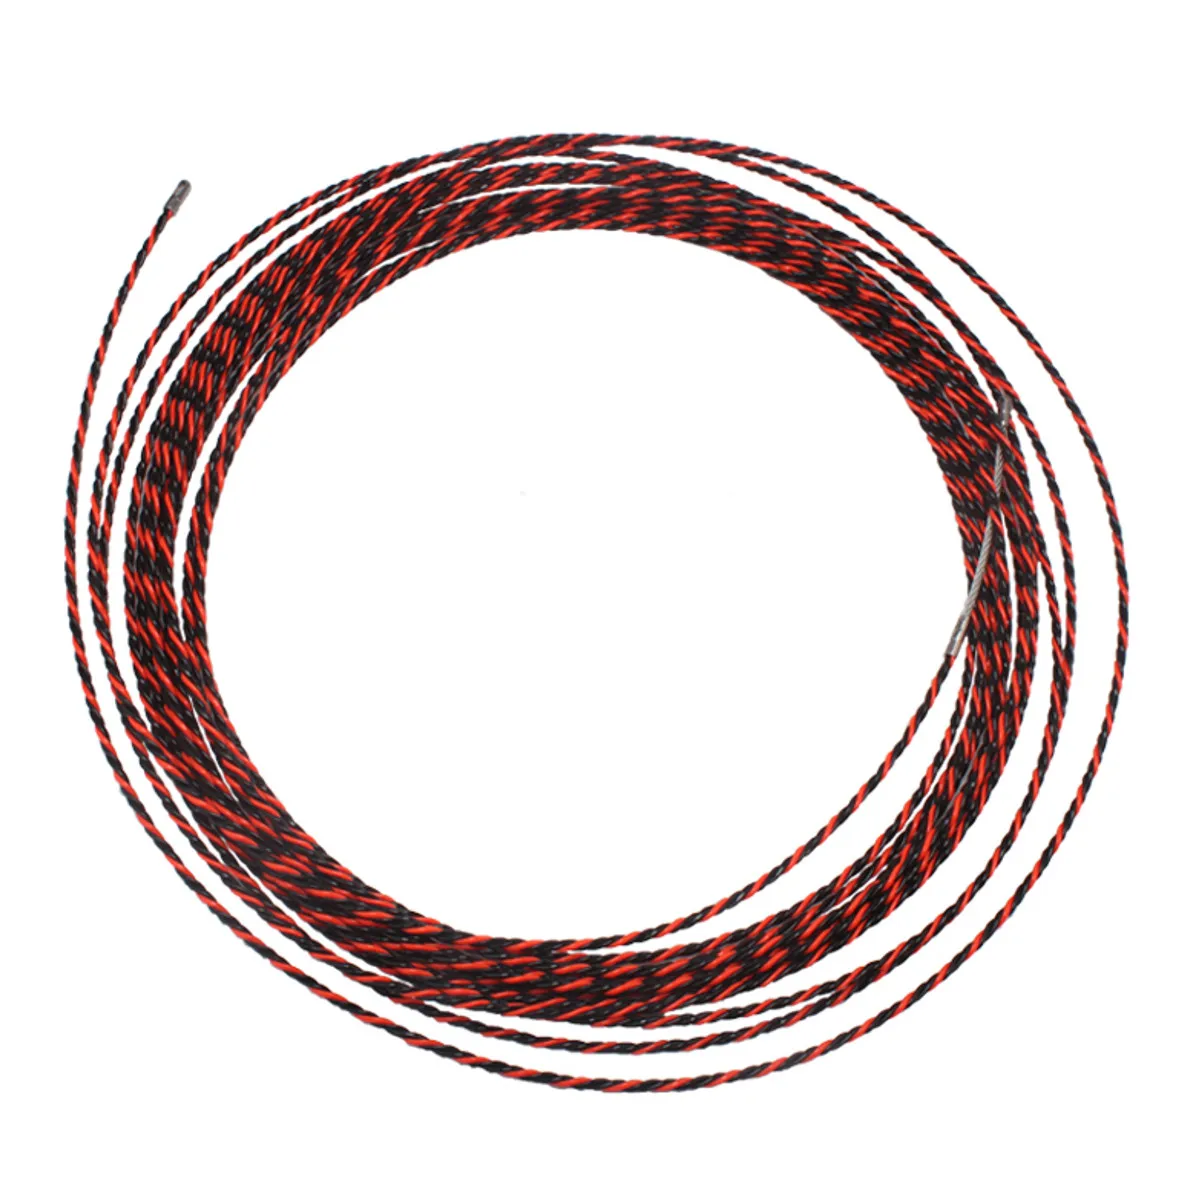 50 м x 6 мм кабель толкатель труба-змейка кабель Rodder Рыбная лента проволока полиэстер Рыбная лента Rodder износостойкая и коррозионная Новинка